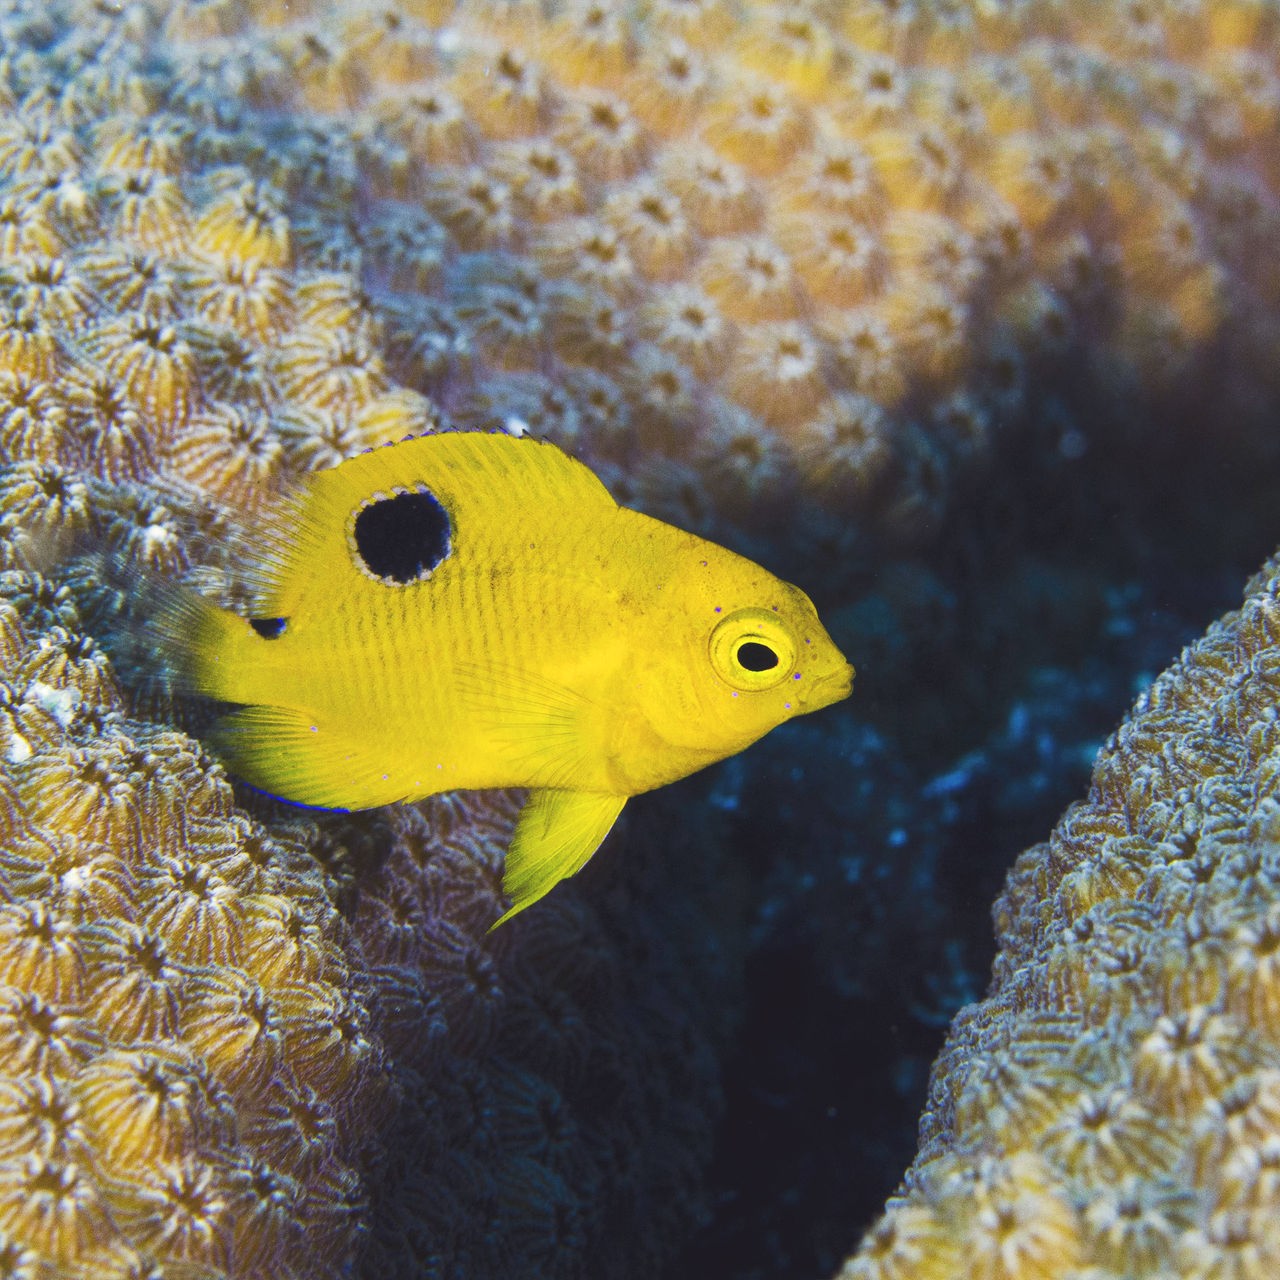 Ein gelber Fisch mit schwarzem Punkt auf der Flosse schwimmt dicht über zwei eine ockerfarbene Korallen mit pockenartiger Oberfläche und einem dunklen Schatten.